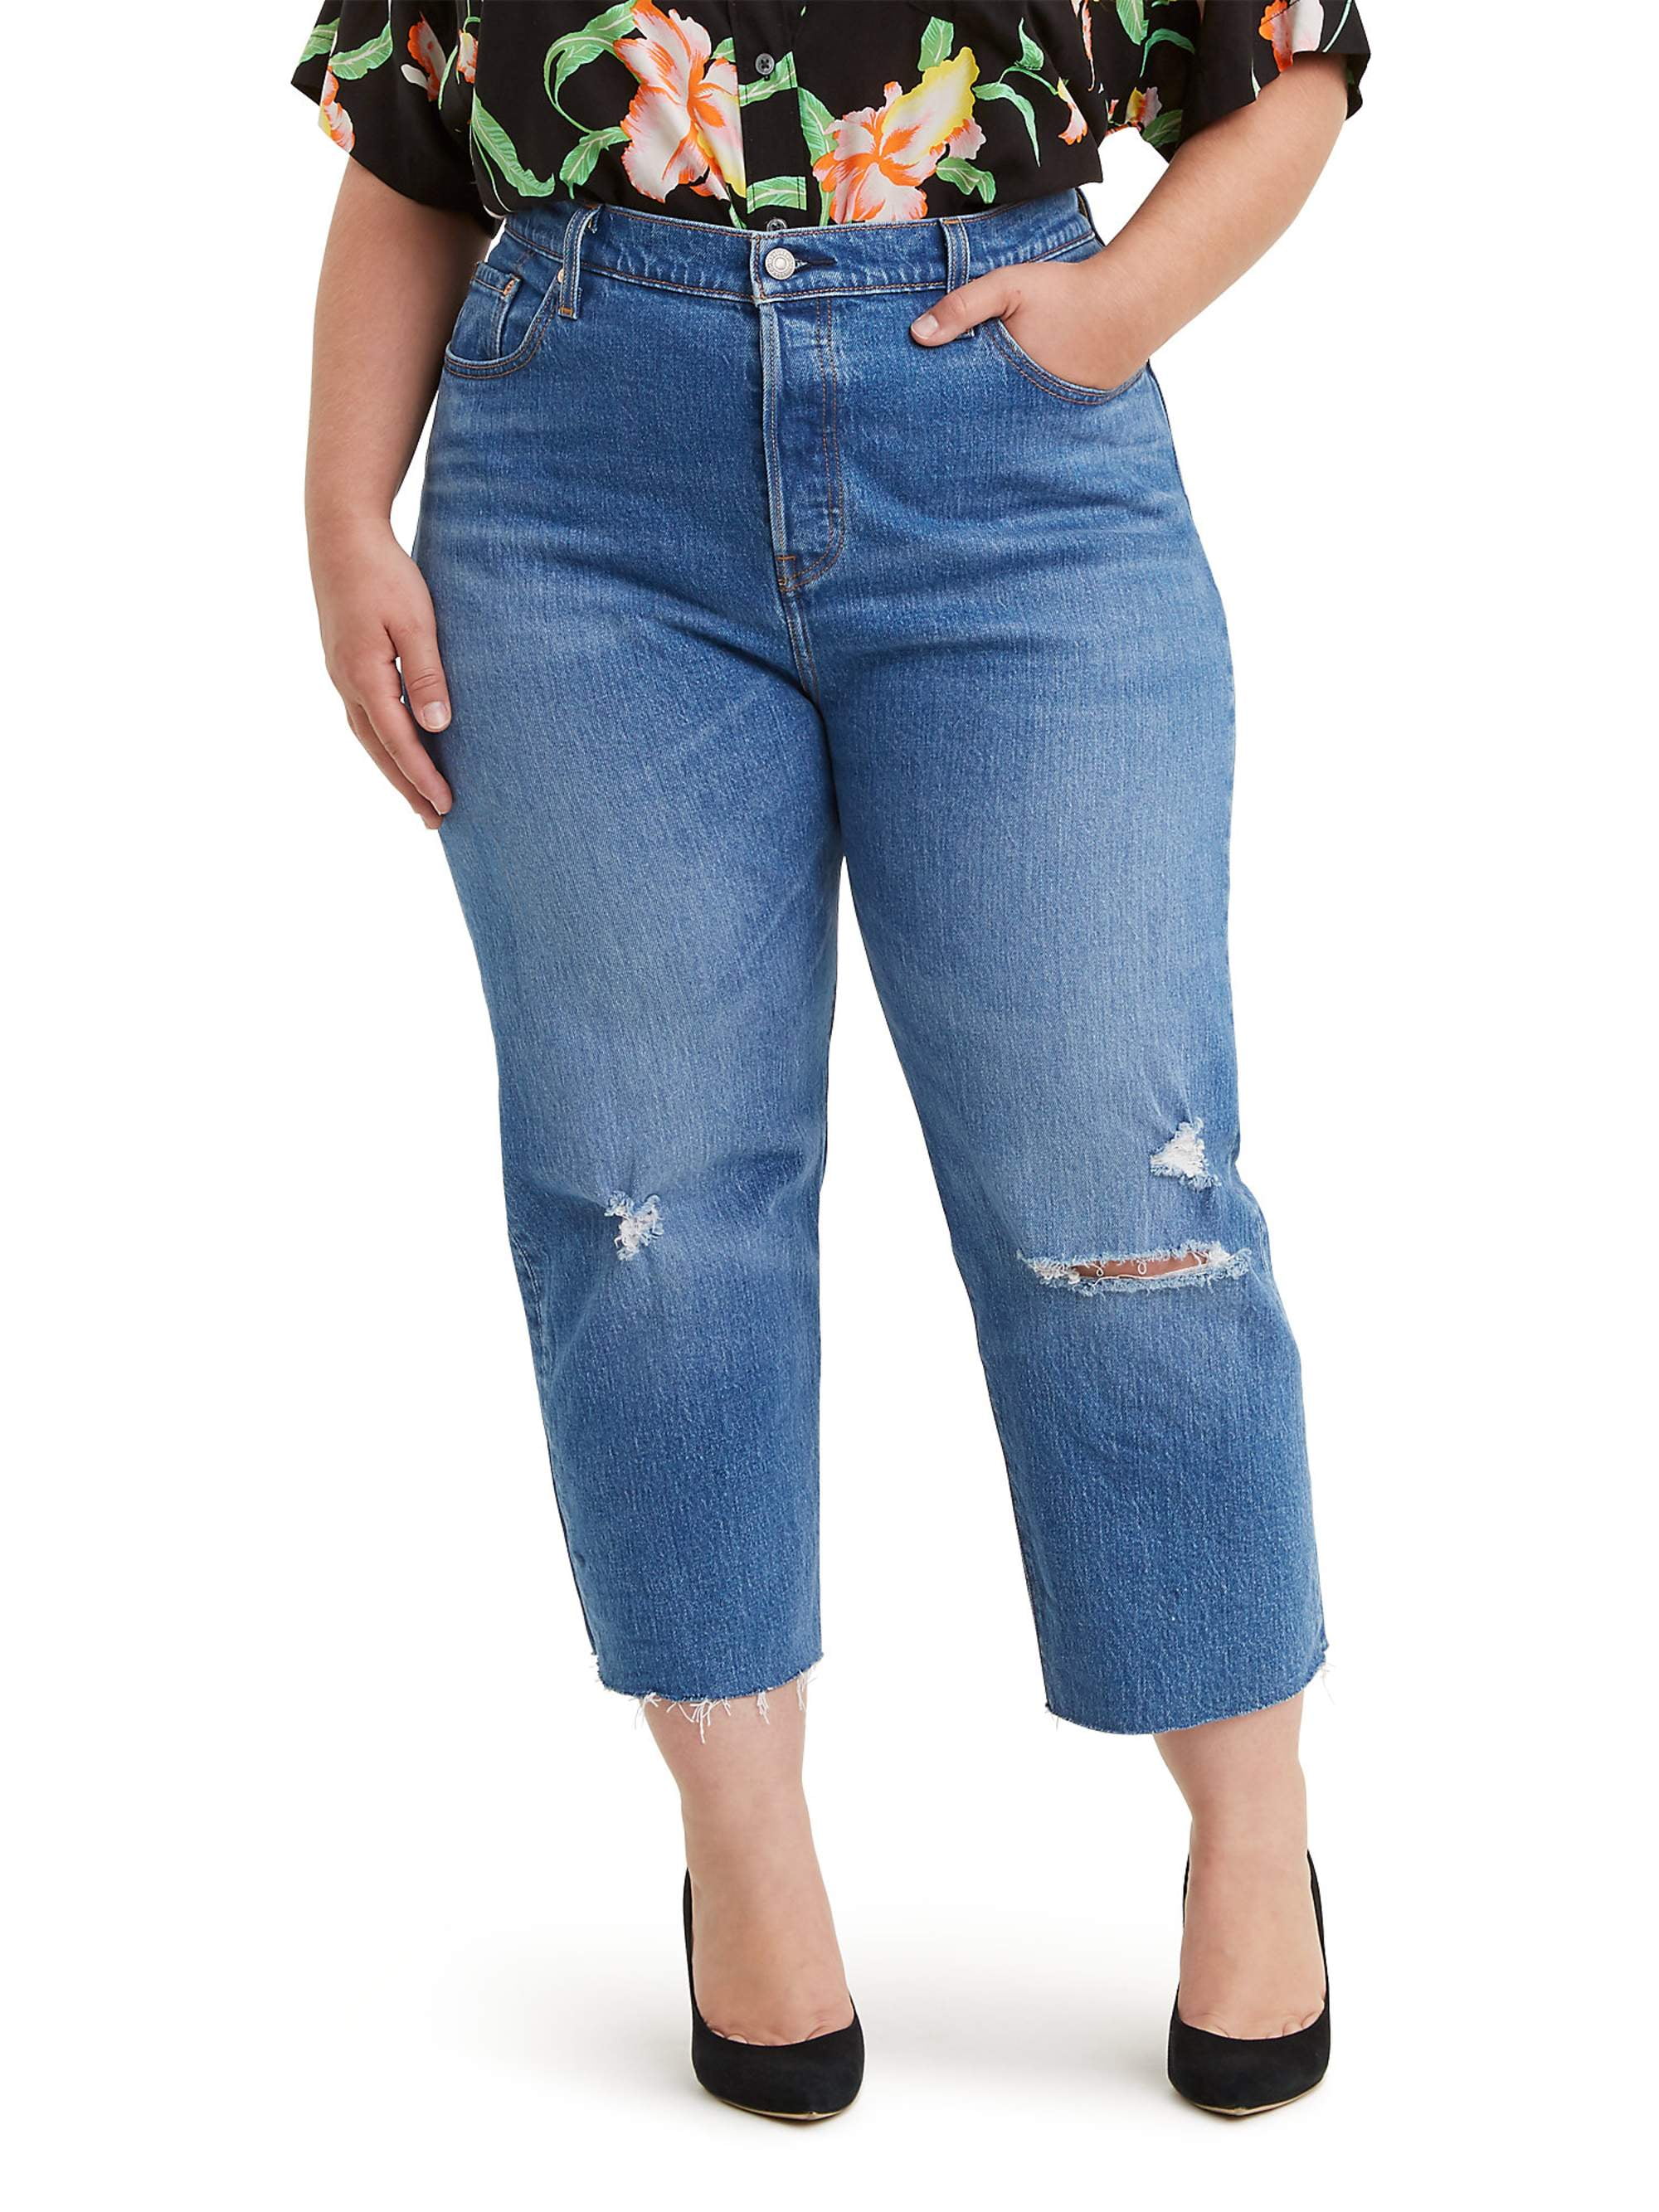 levi's 505 women's plus size jeans